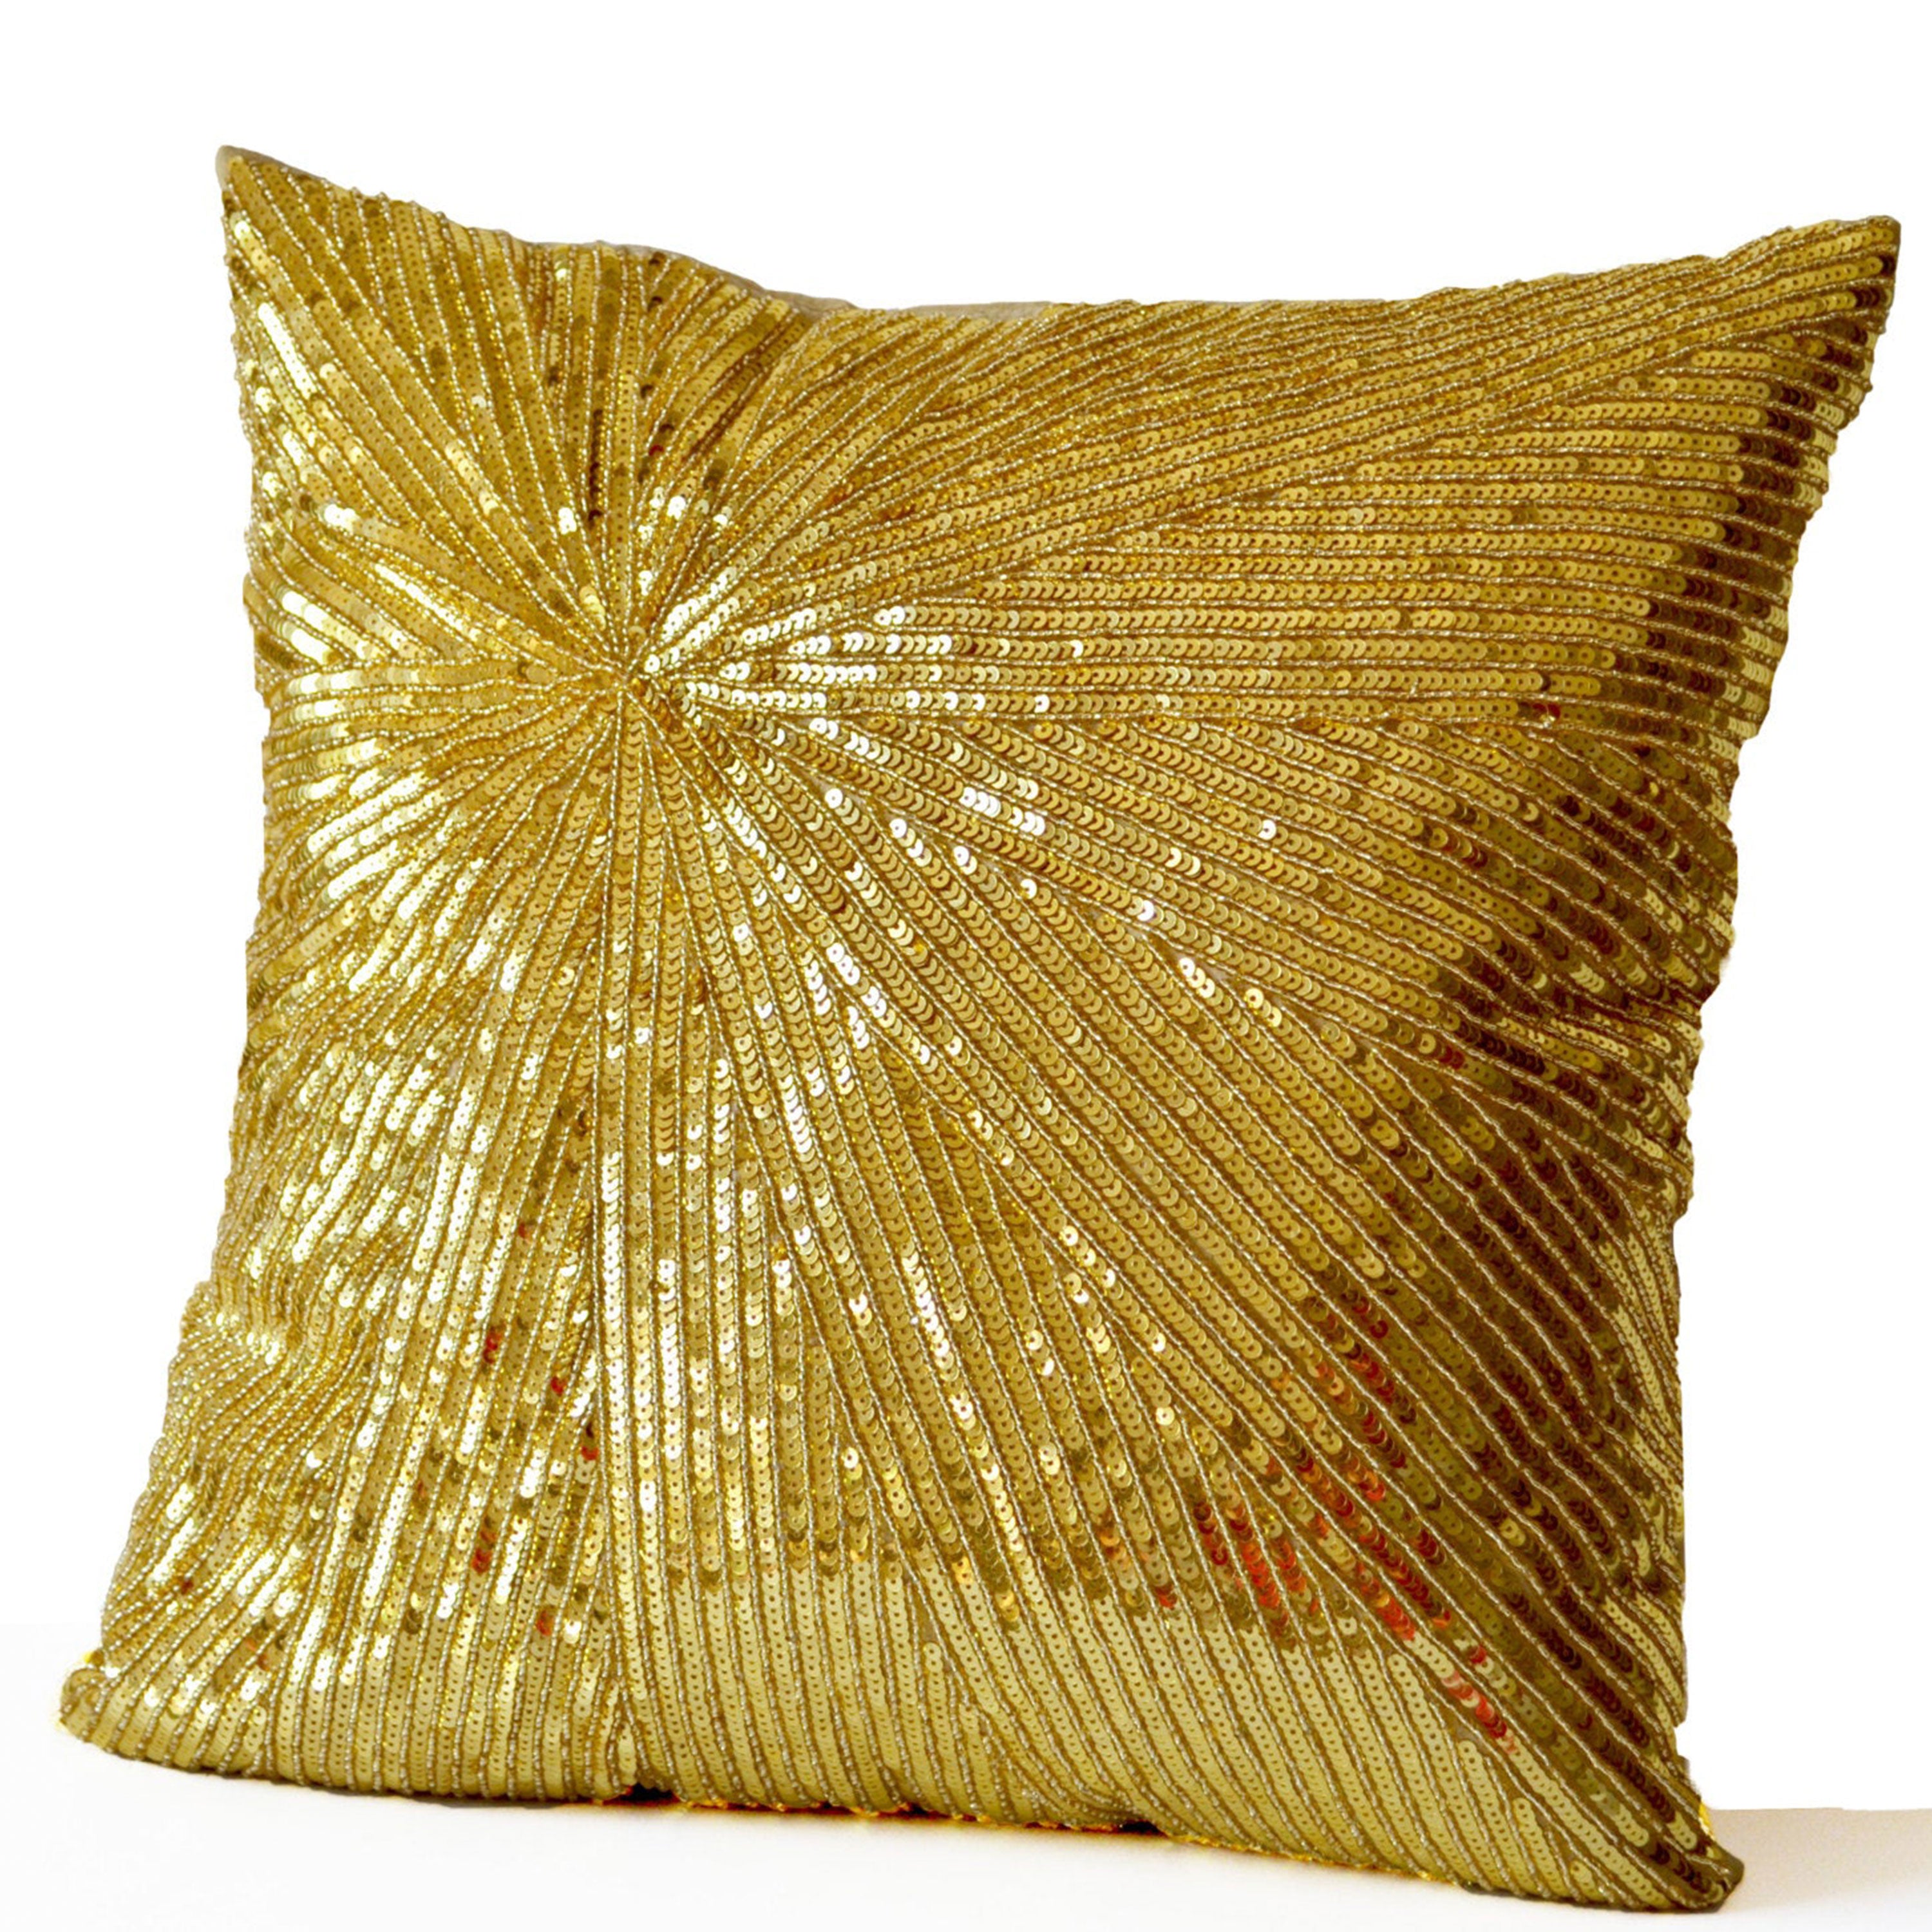 Gold Sequin Pillow